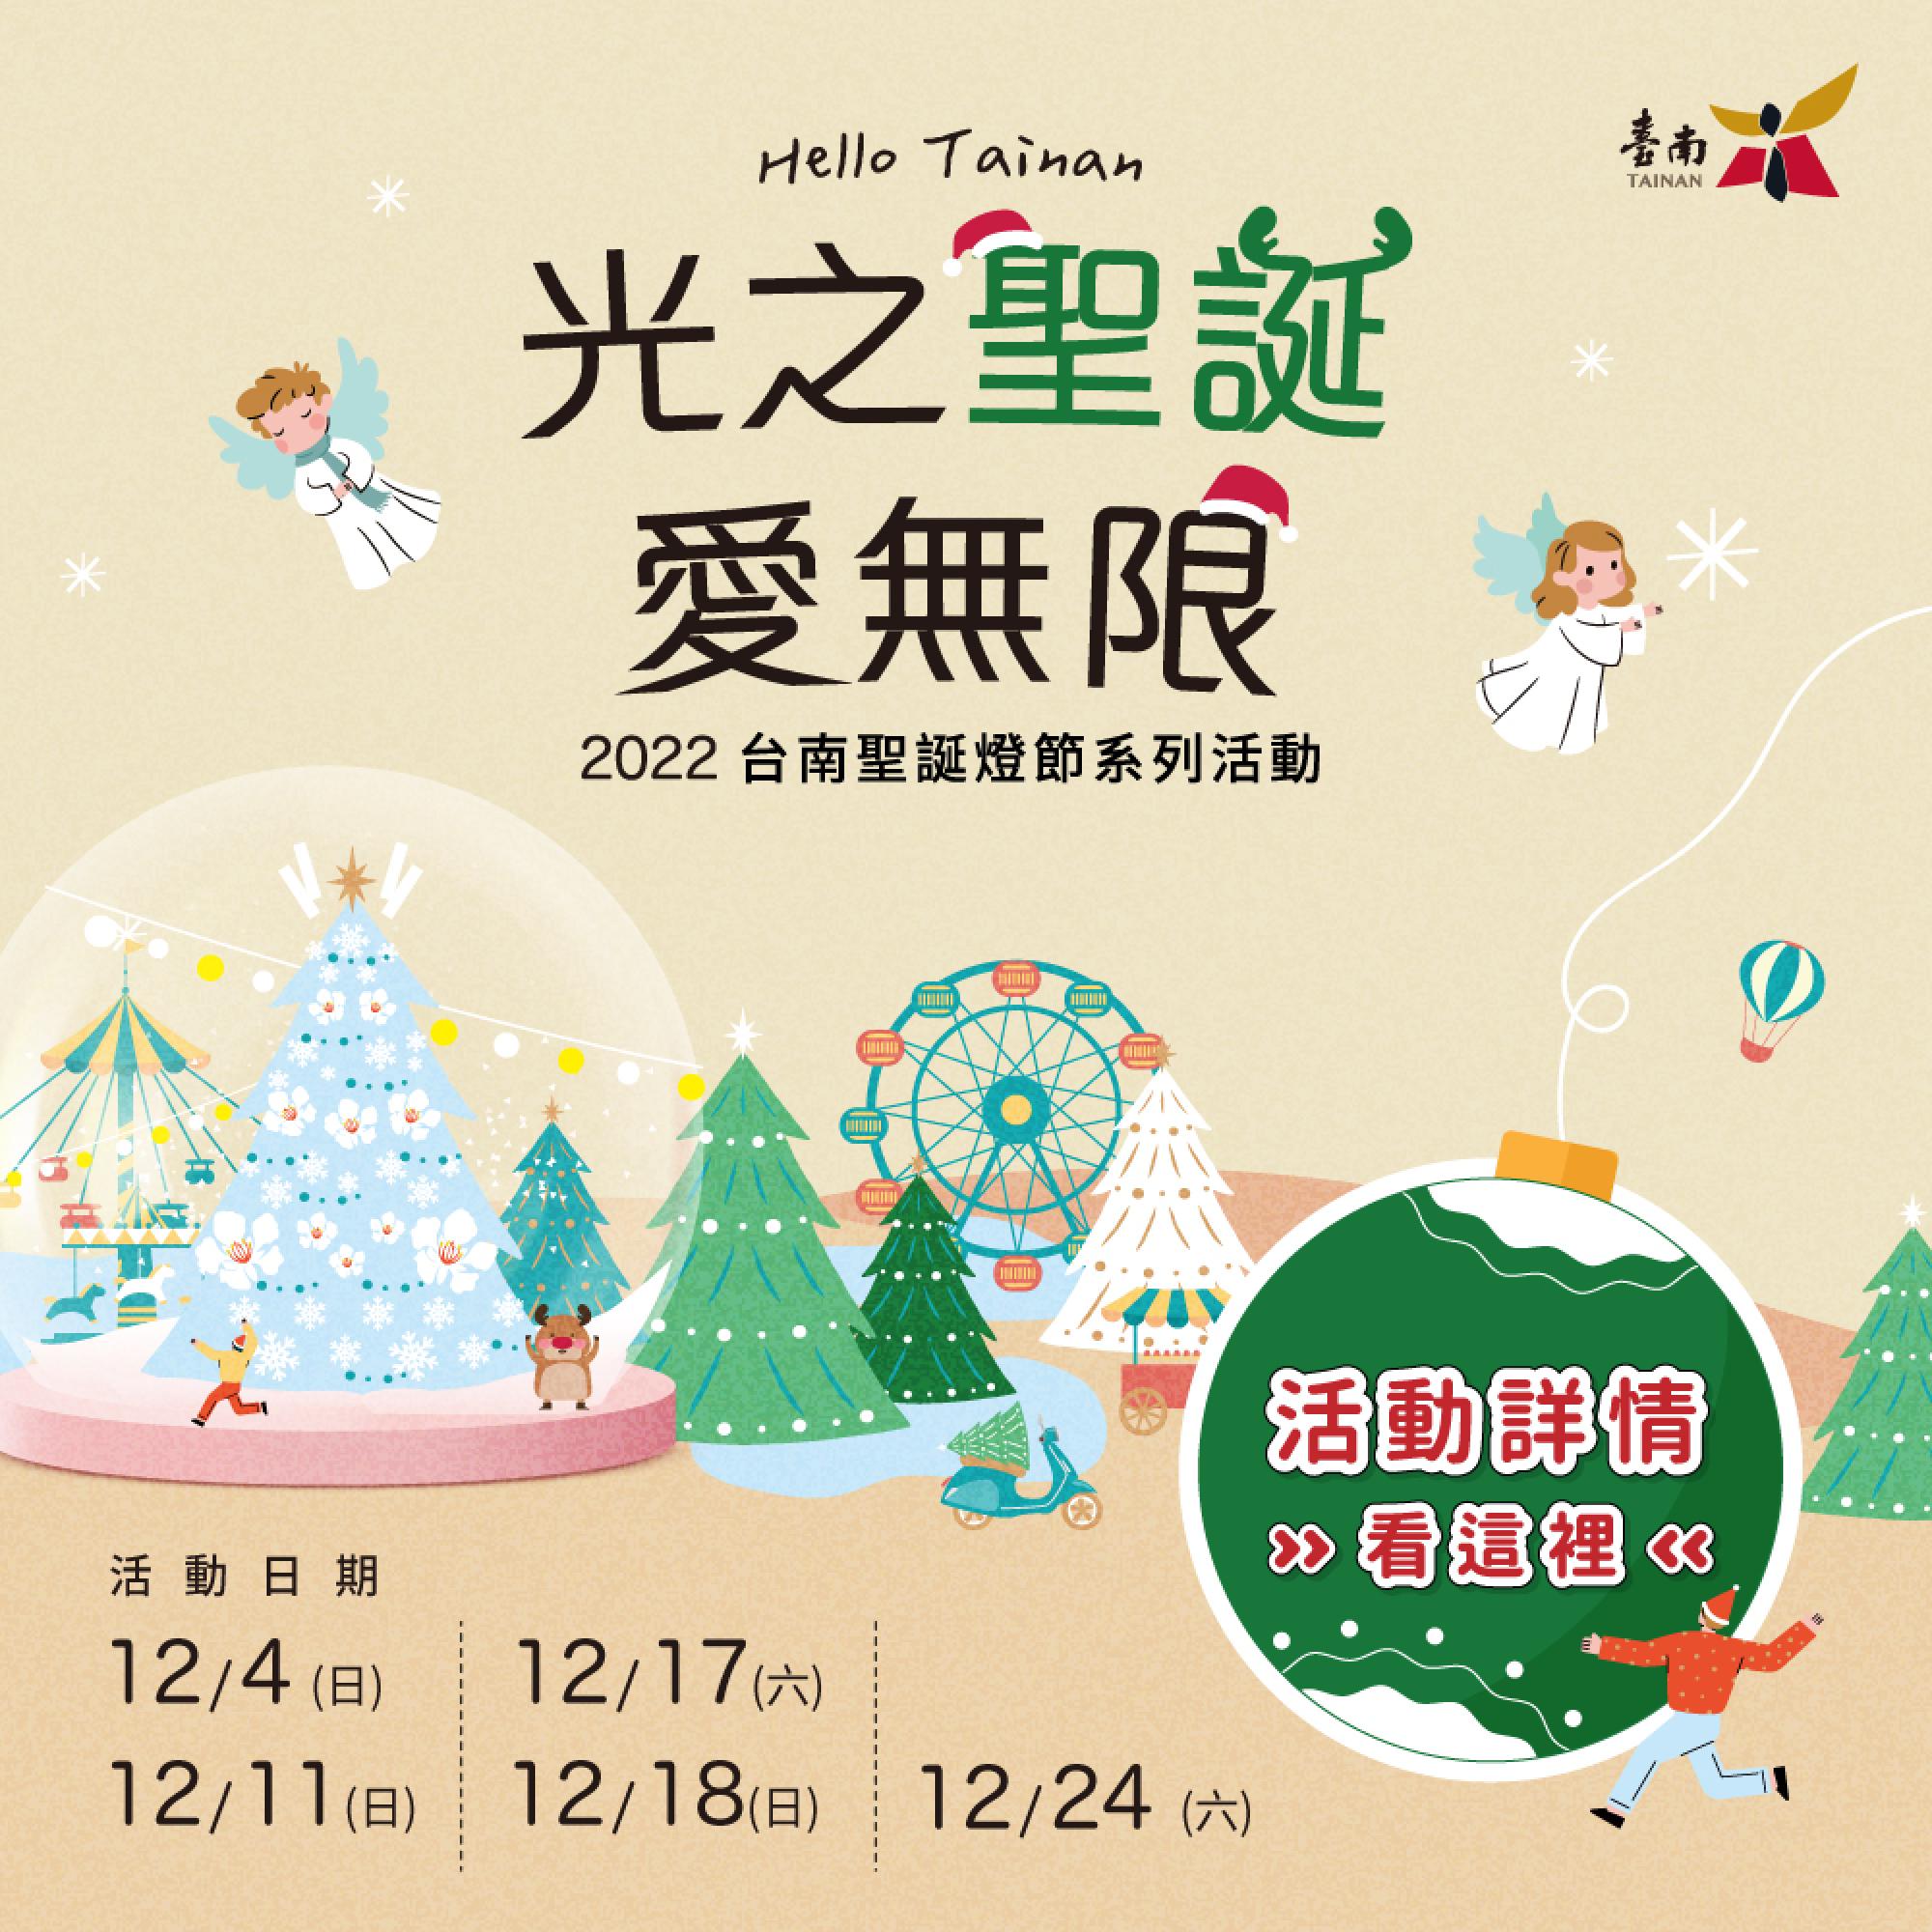 2022台南市聖誕燈節系列活動